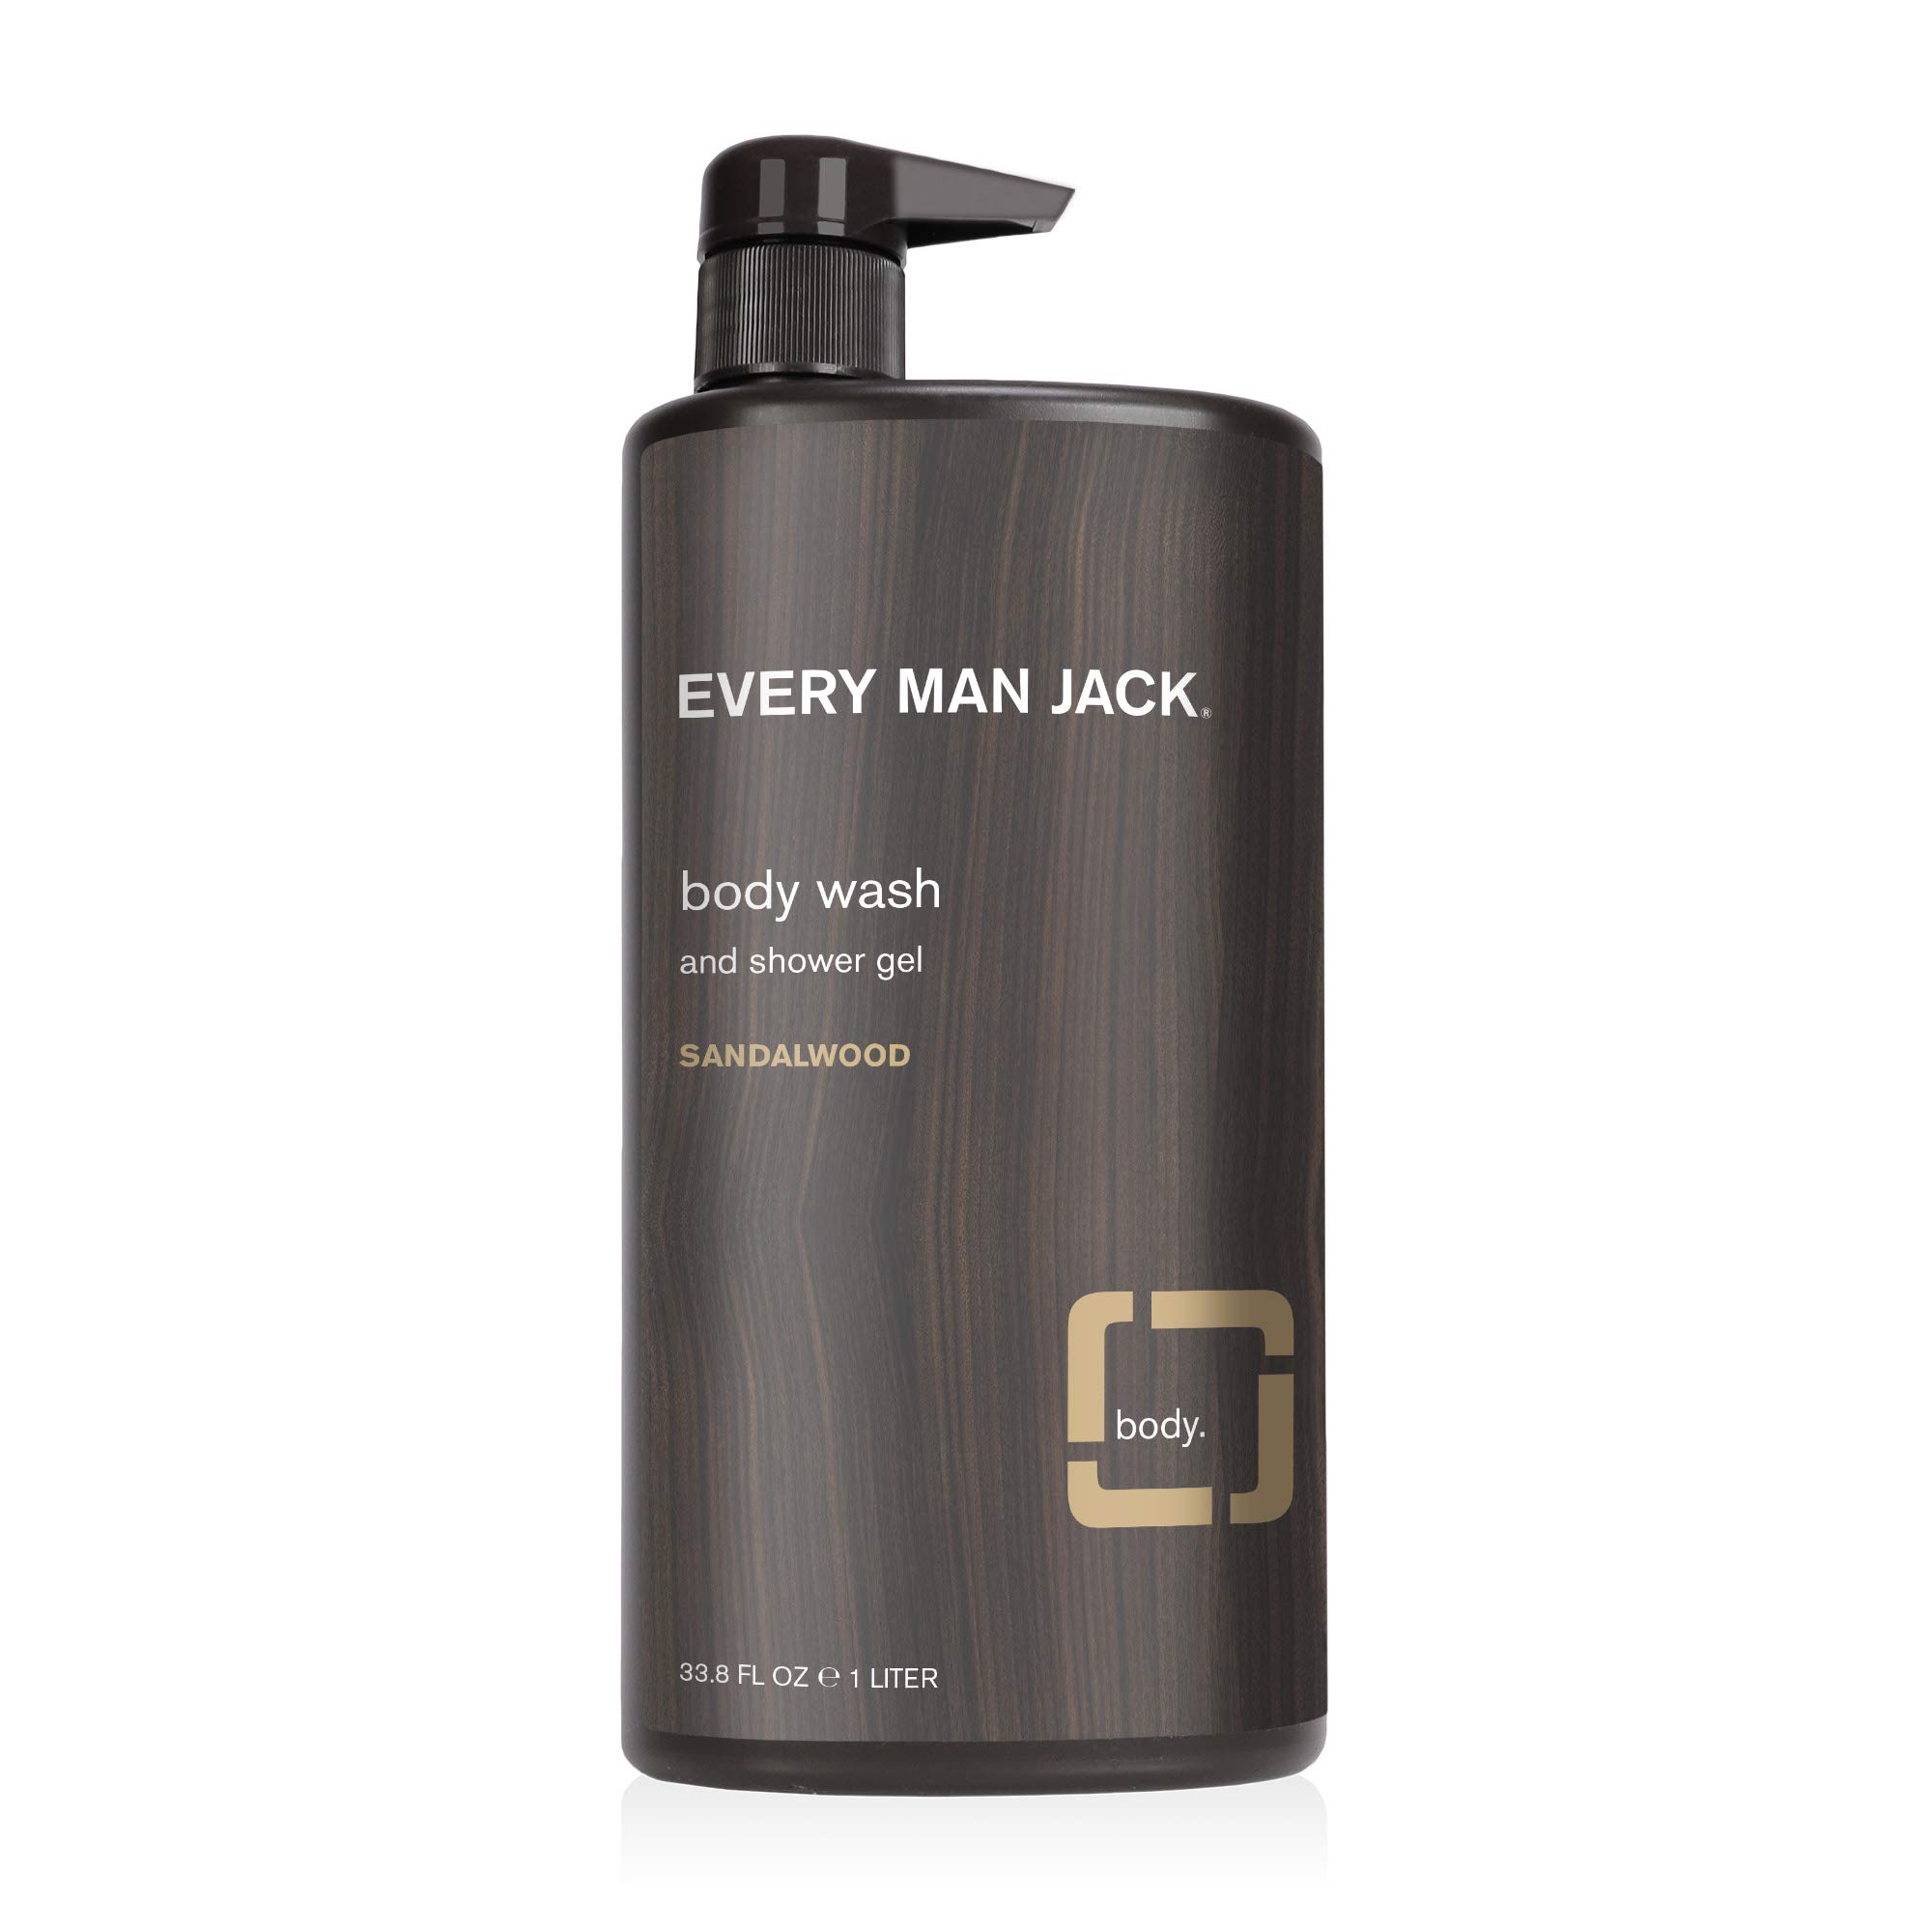 Every Man Jack Body Wash, Sandalwood 33.8-ounce Moisturizing